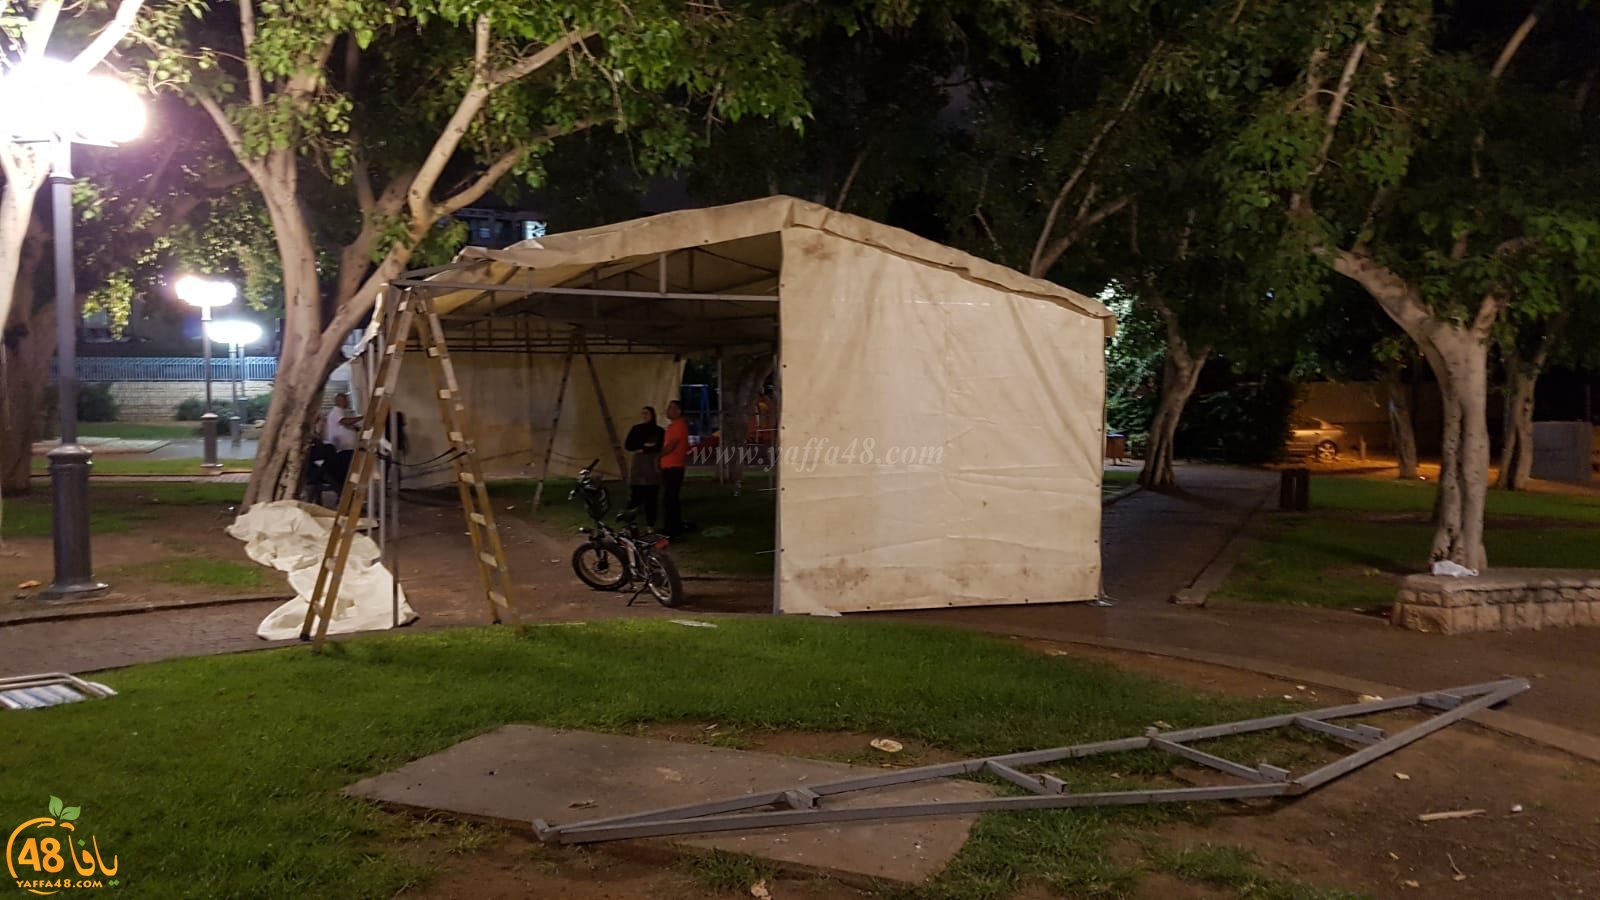  فيديو: عائلة يافية تُلقى في الشارع وتنصب خيمة للمبيت فيها احتجاجا على ازمة السكن 